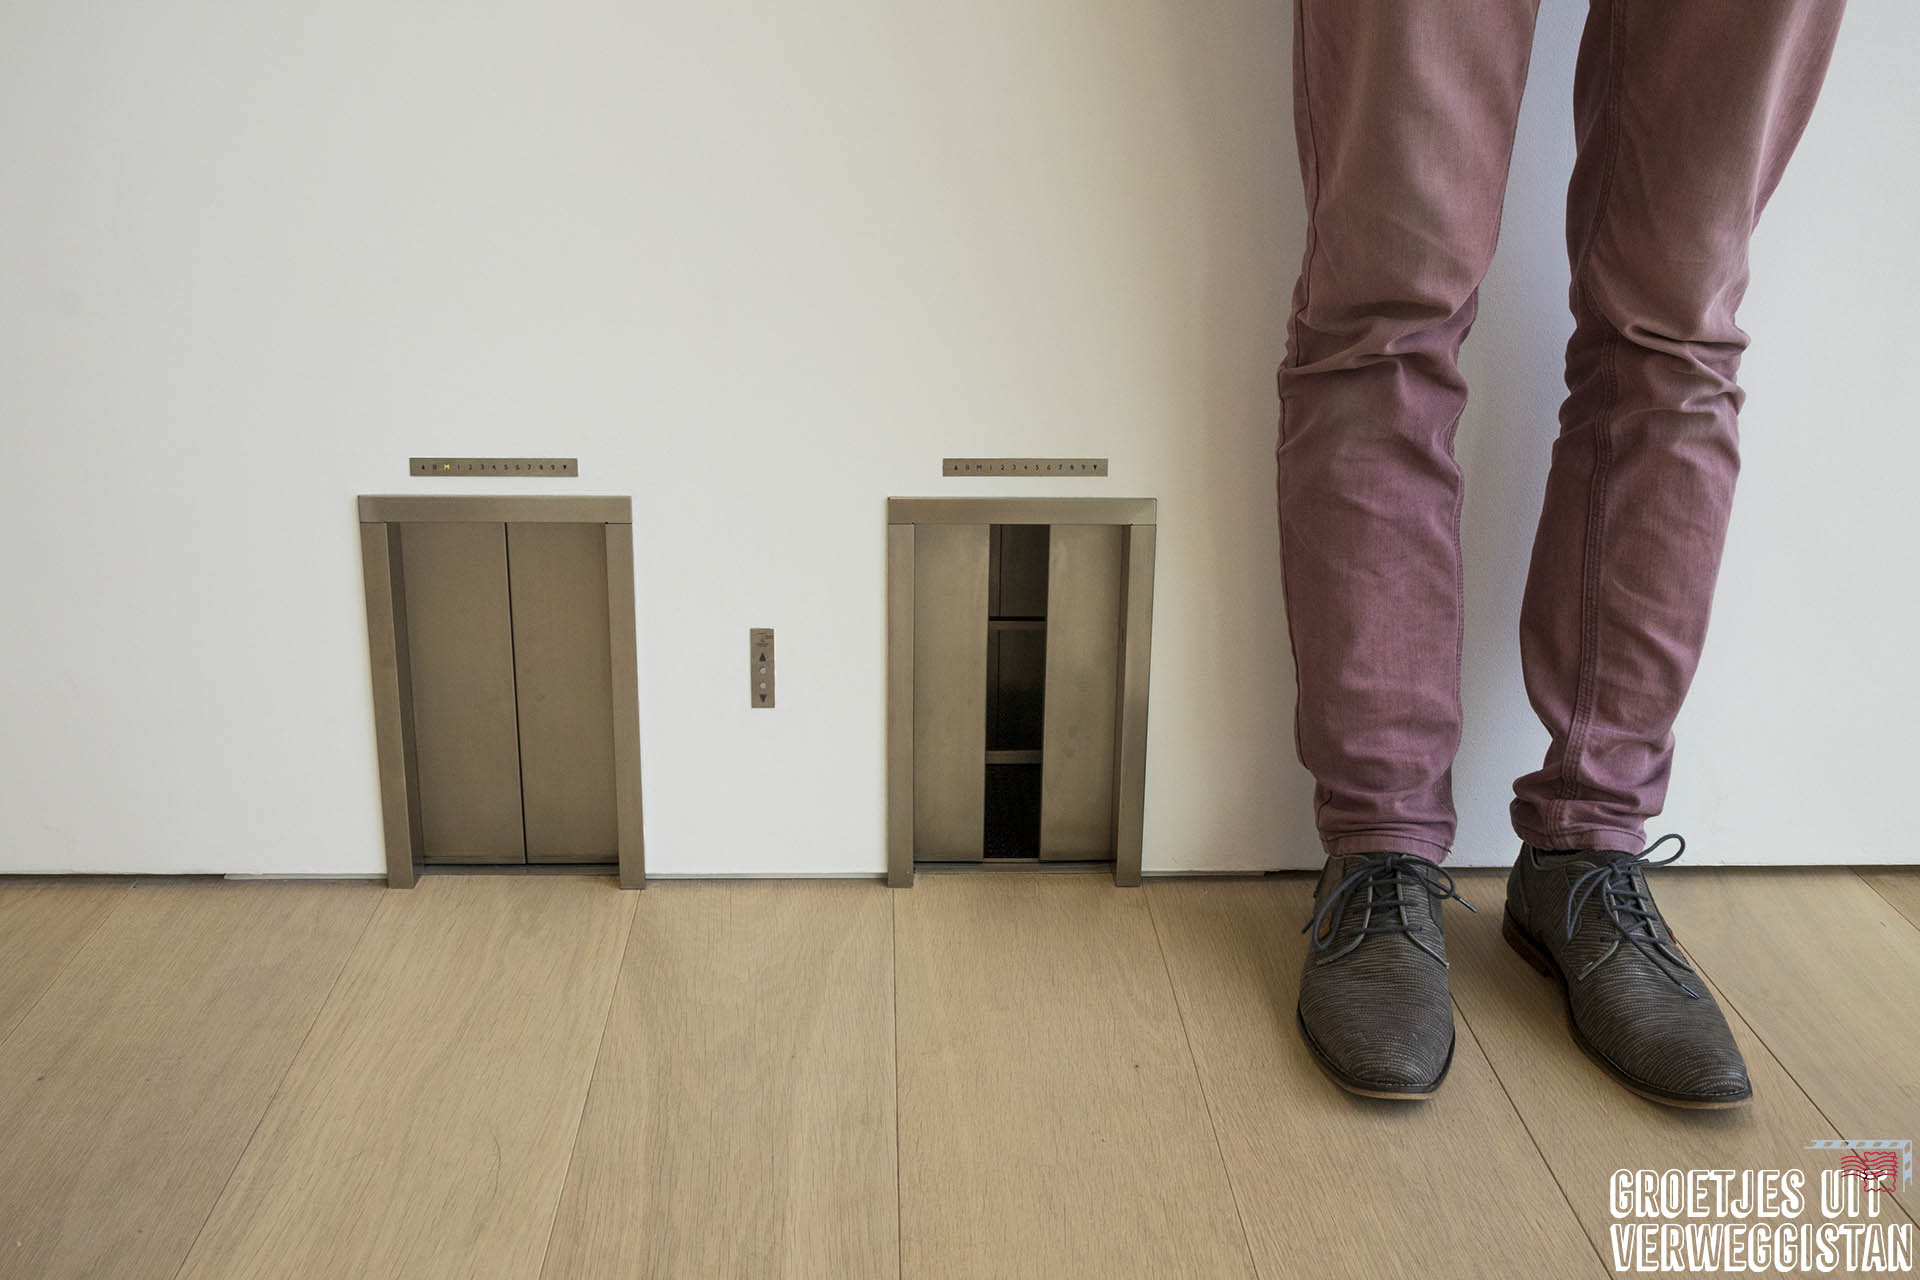 Kunstwerk van Maurizio Cattelan: twee kleine liften op enkelhoogte waarvan de deuren open en dicht gaan alsof ze echt werken.